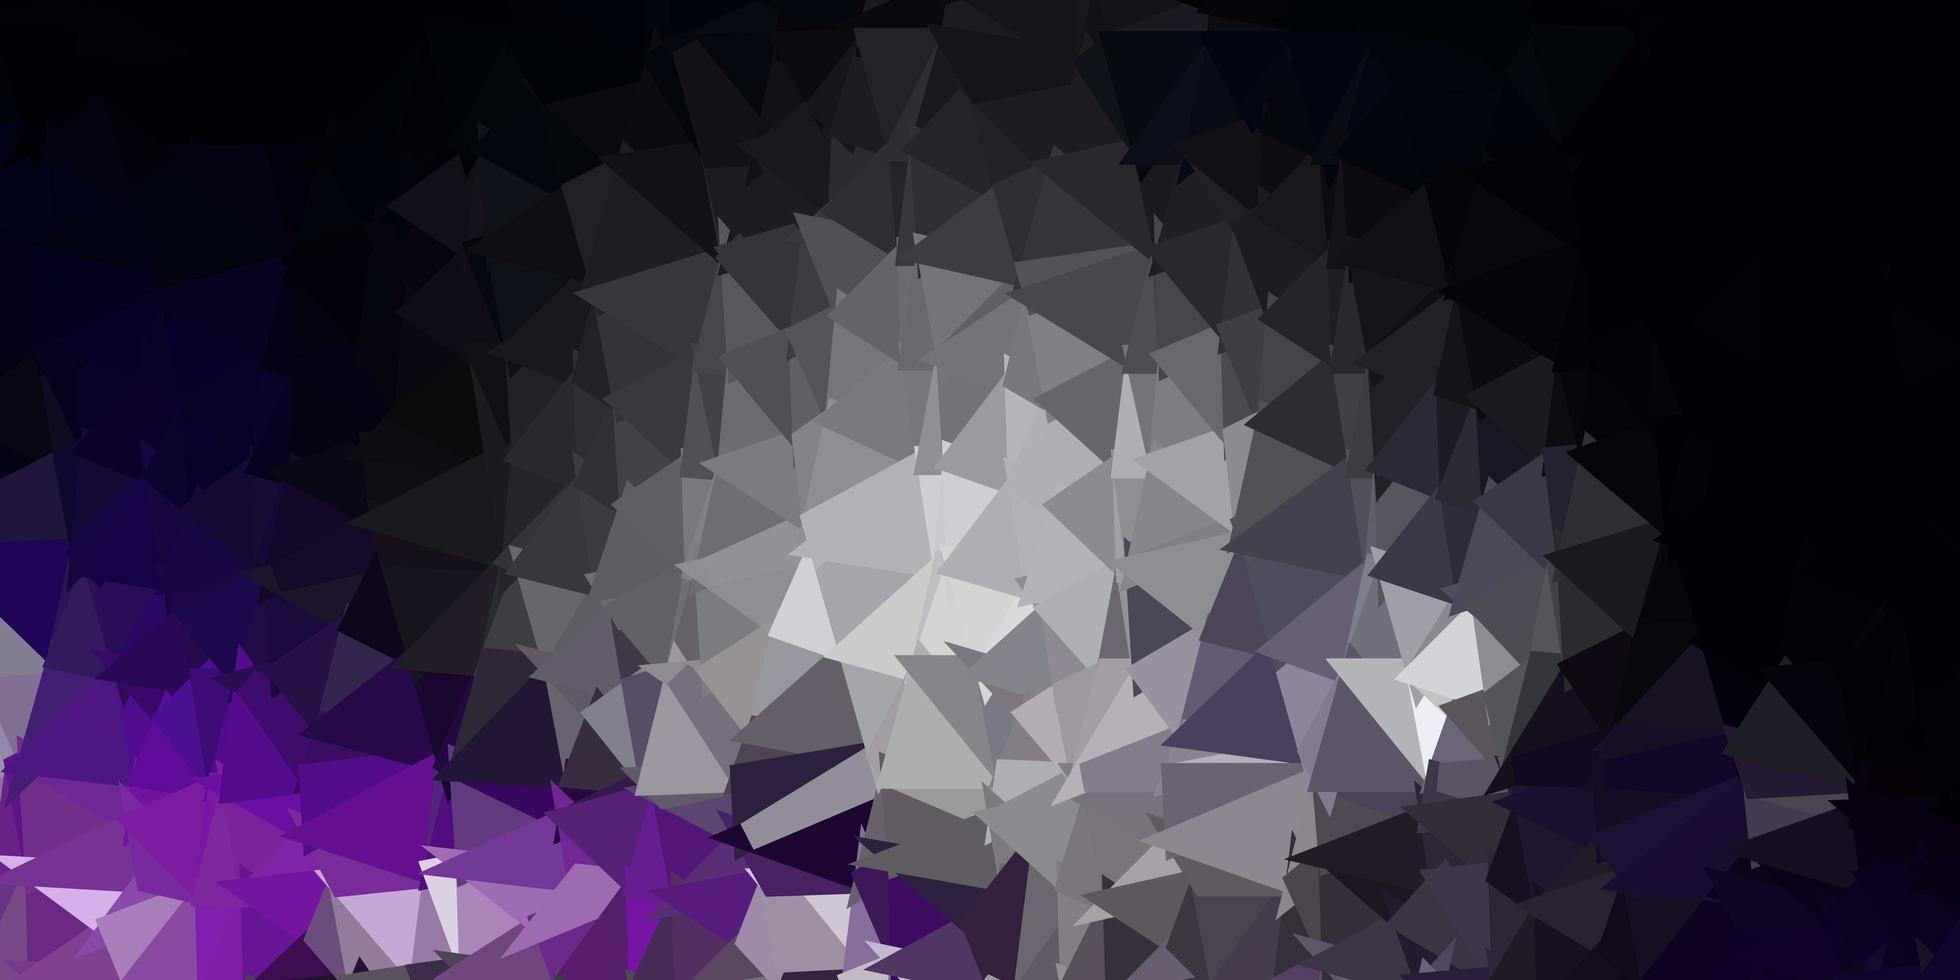 texture de polygone dégradé vecteur violet foncé.